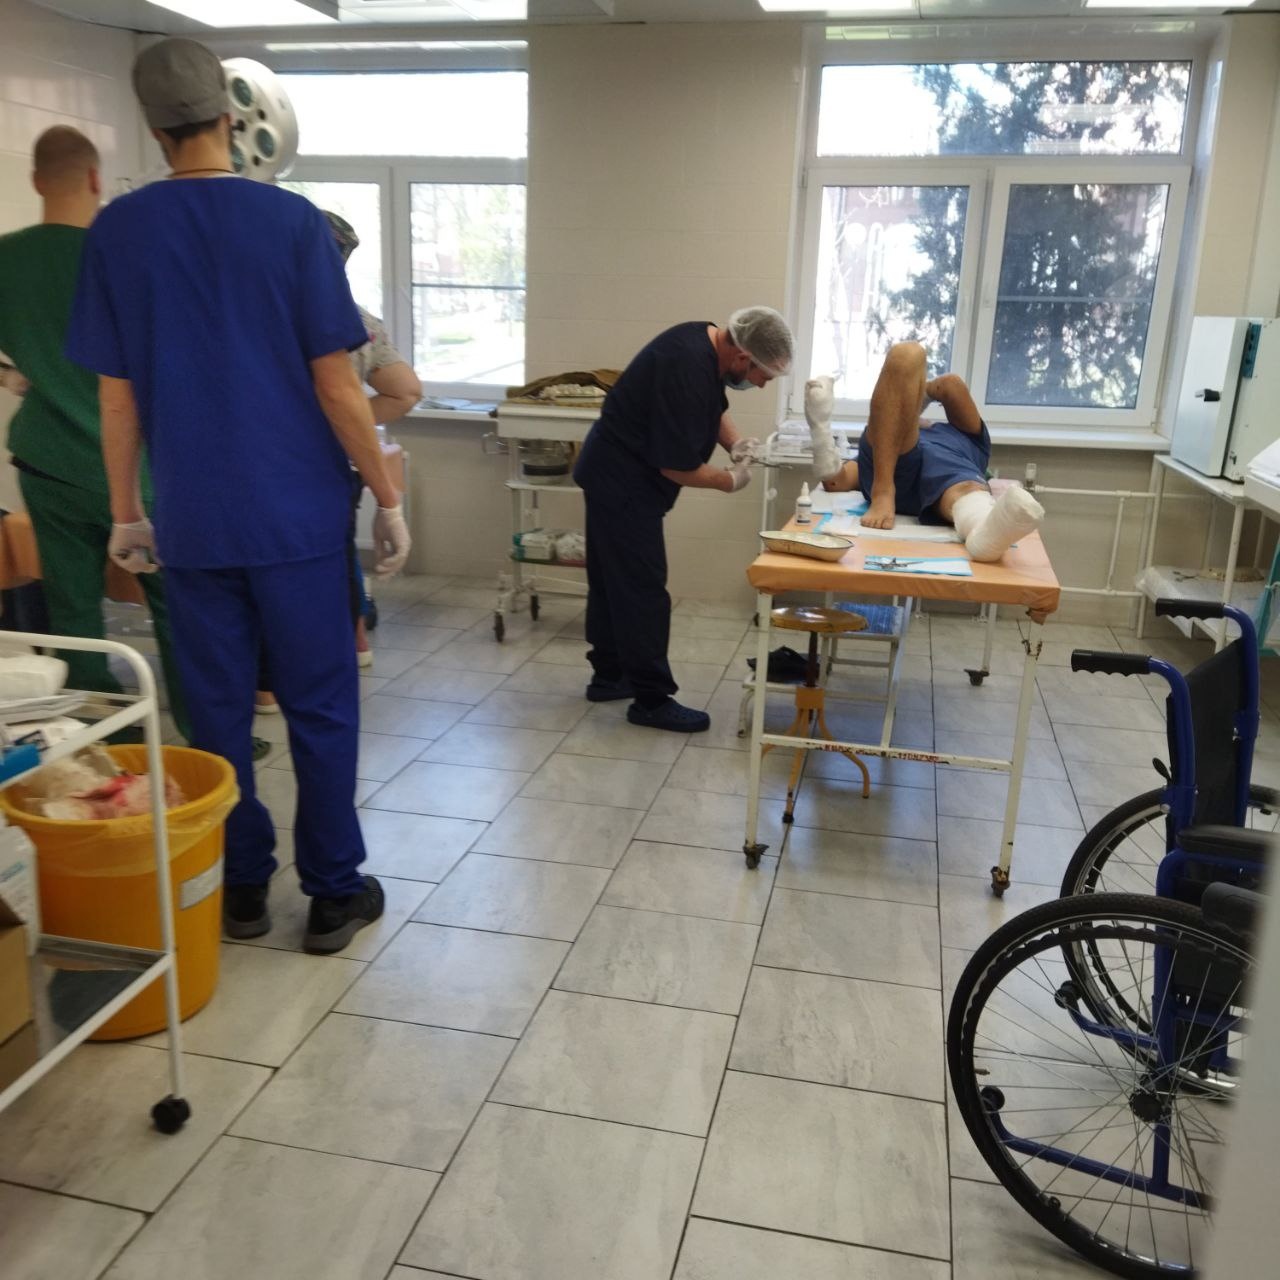 Волонтеры рассказали о помощи в раненым бойцам СВО в госпитале Ростова